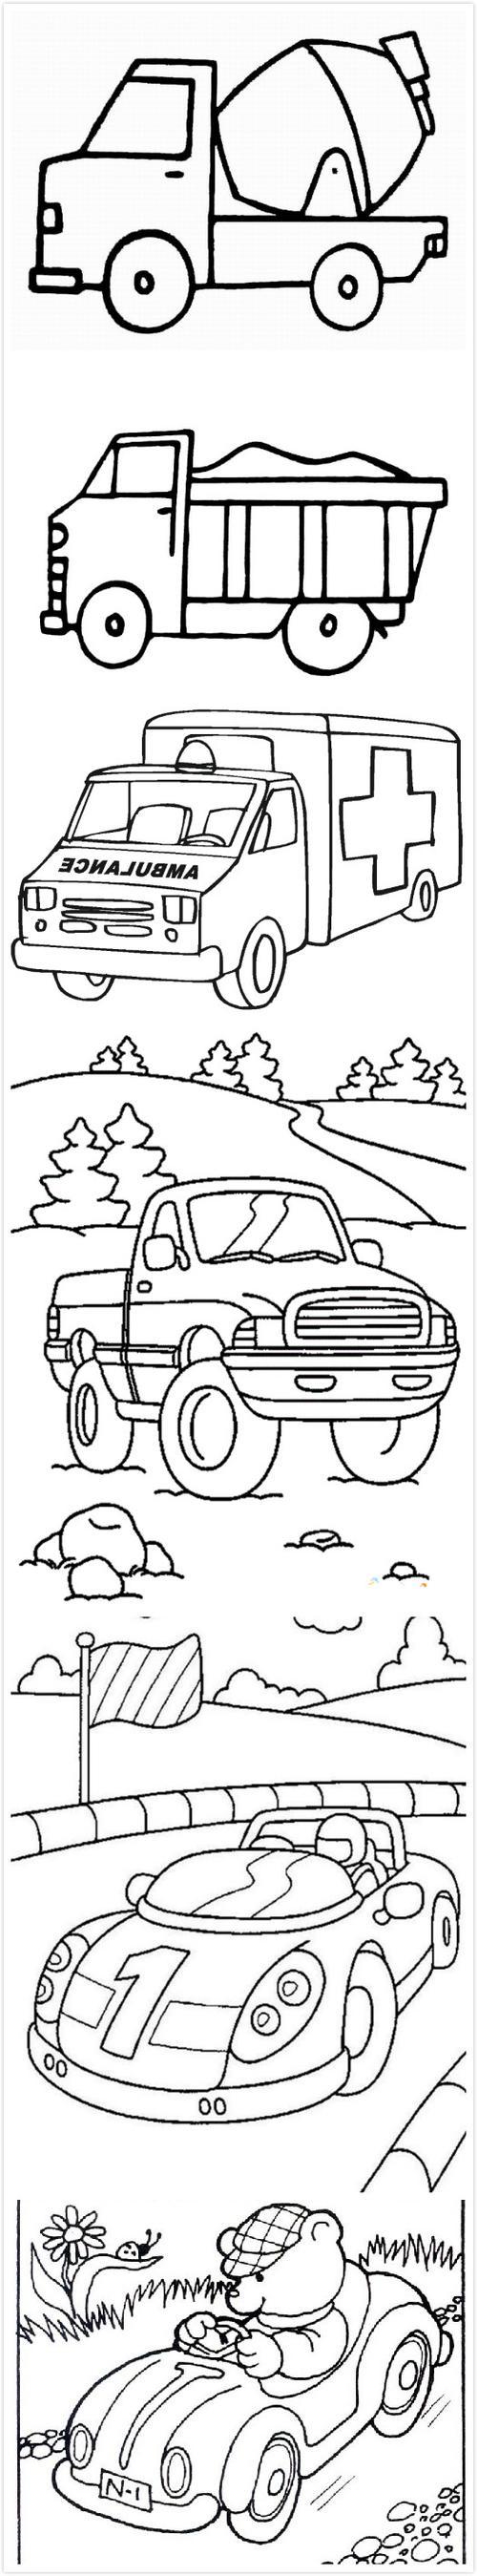 汽车简笔画图片越野车简笔画怎么画-儿童简笔画大全酷酷的越野车简笔